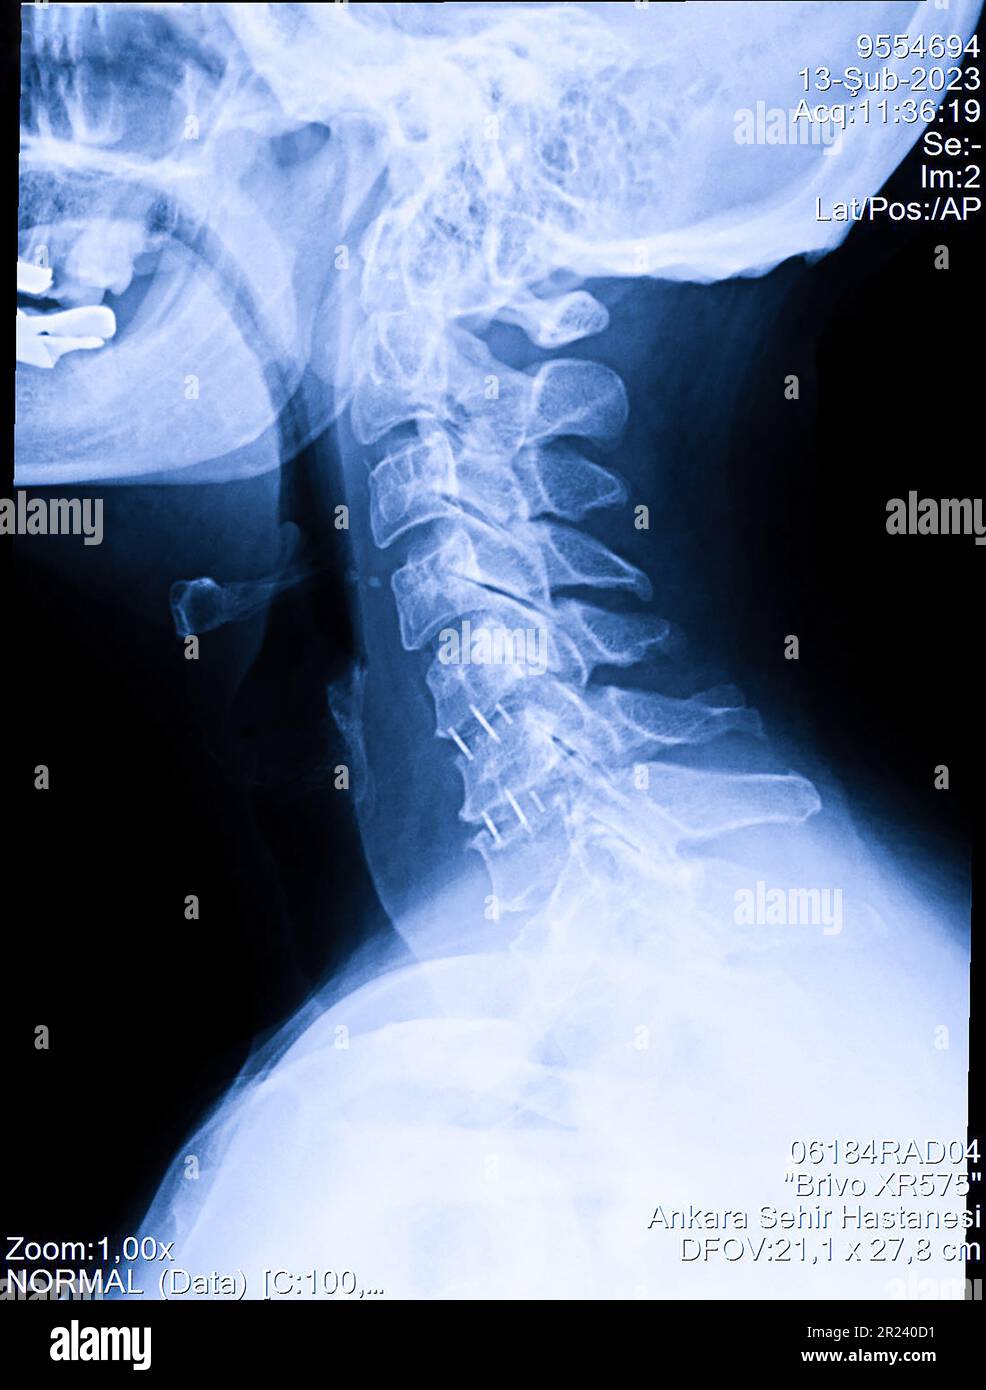 Radiografia della colonna cervicale della donna, radiografia del collo umano Foto Stock